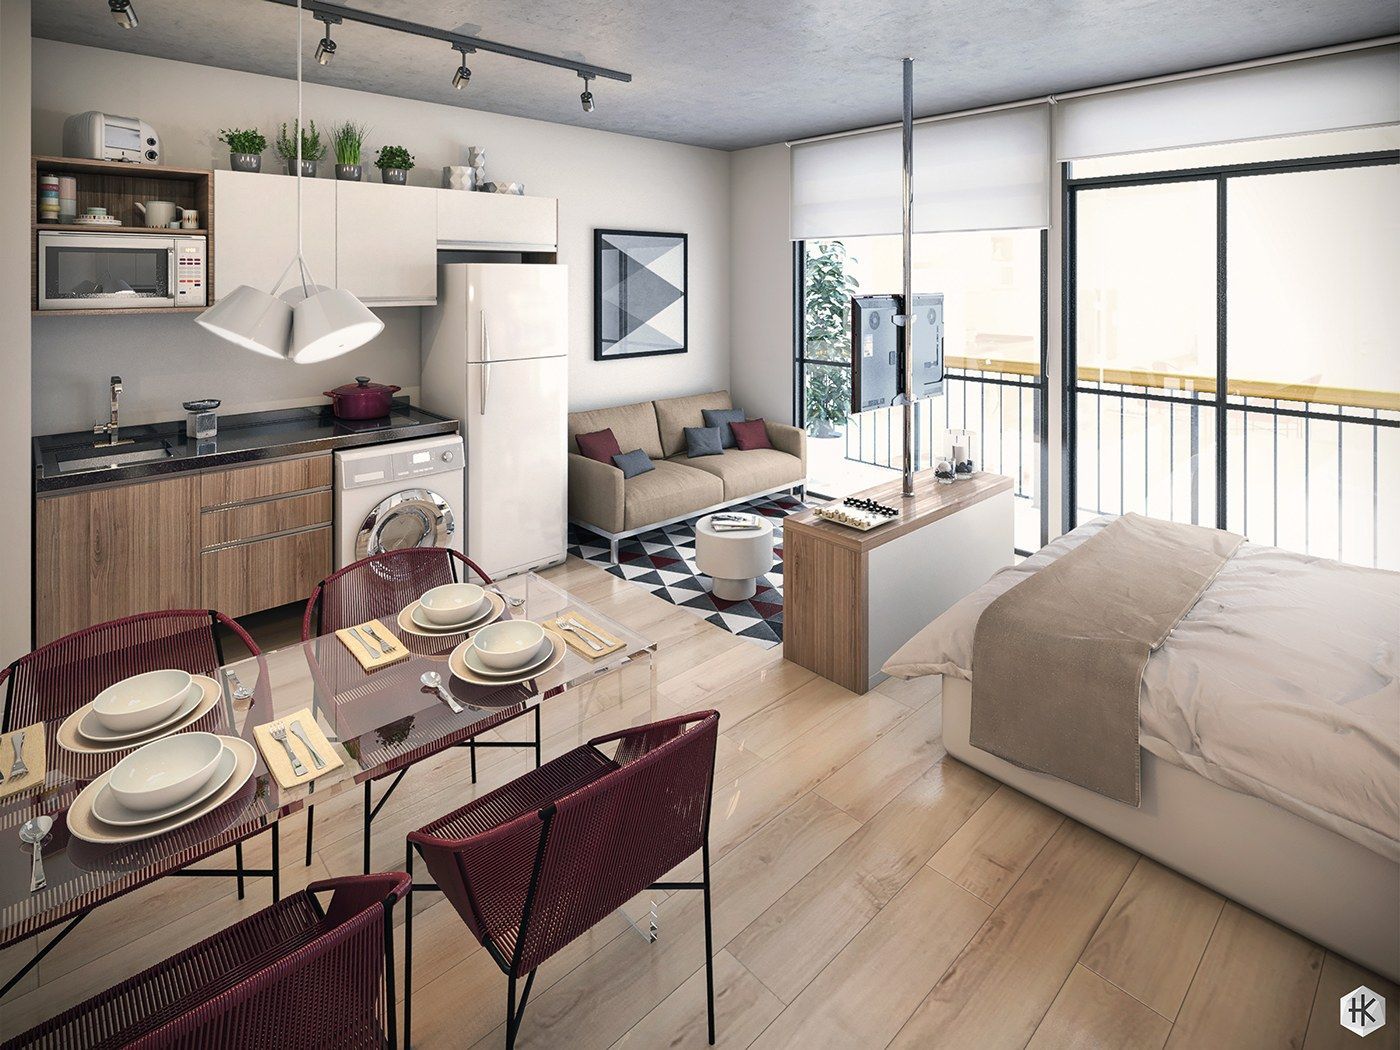 Thiết kế căn hộ studio cho thuê chuyên nghiệp đã trở thành một nhu cầu thiết yếu trong năm